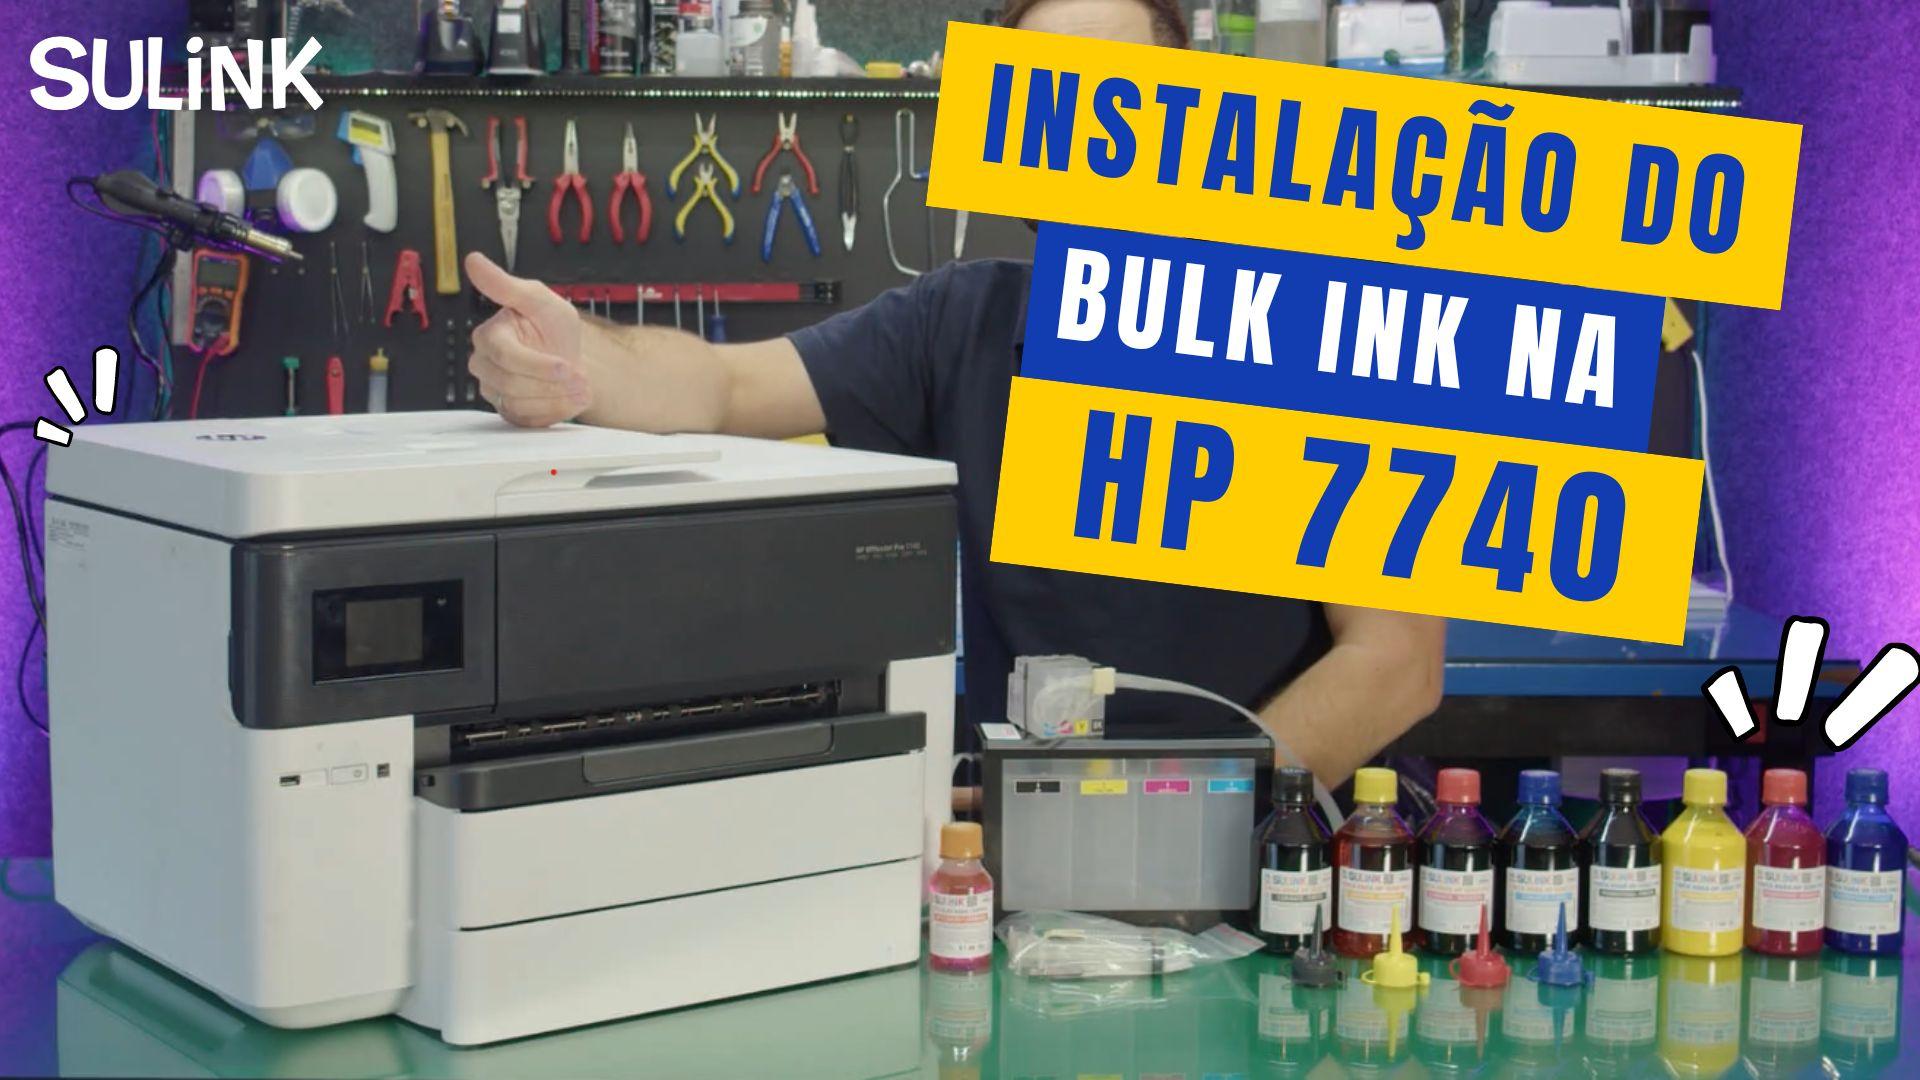 Manual Instalação Bulk Ink Impressora HP 7740 Desbloqueada ChipLess #sulink na Sulink